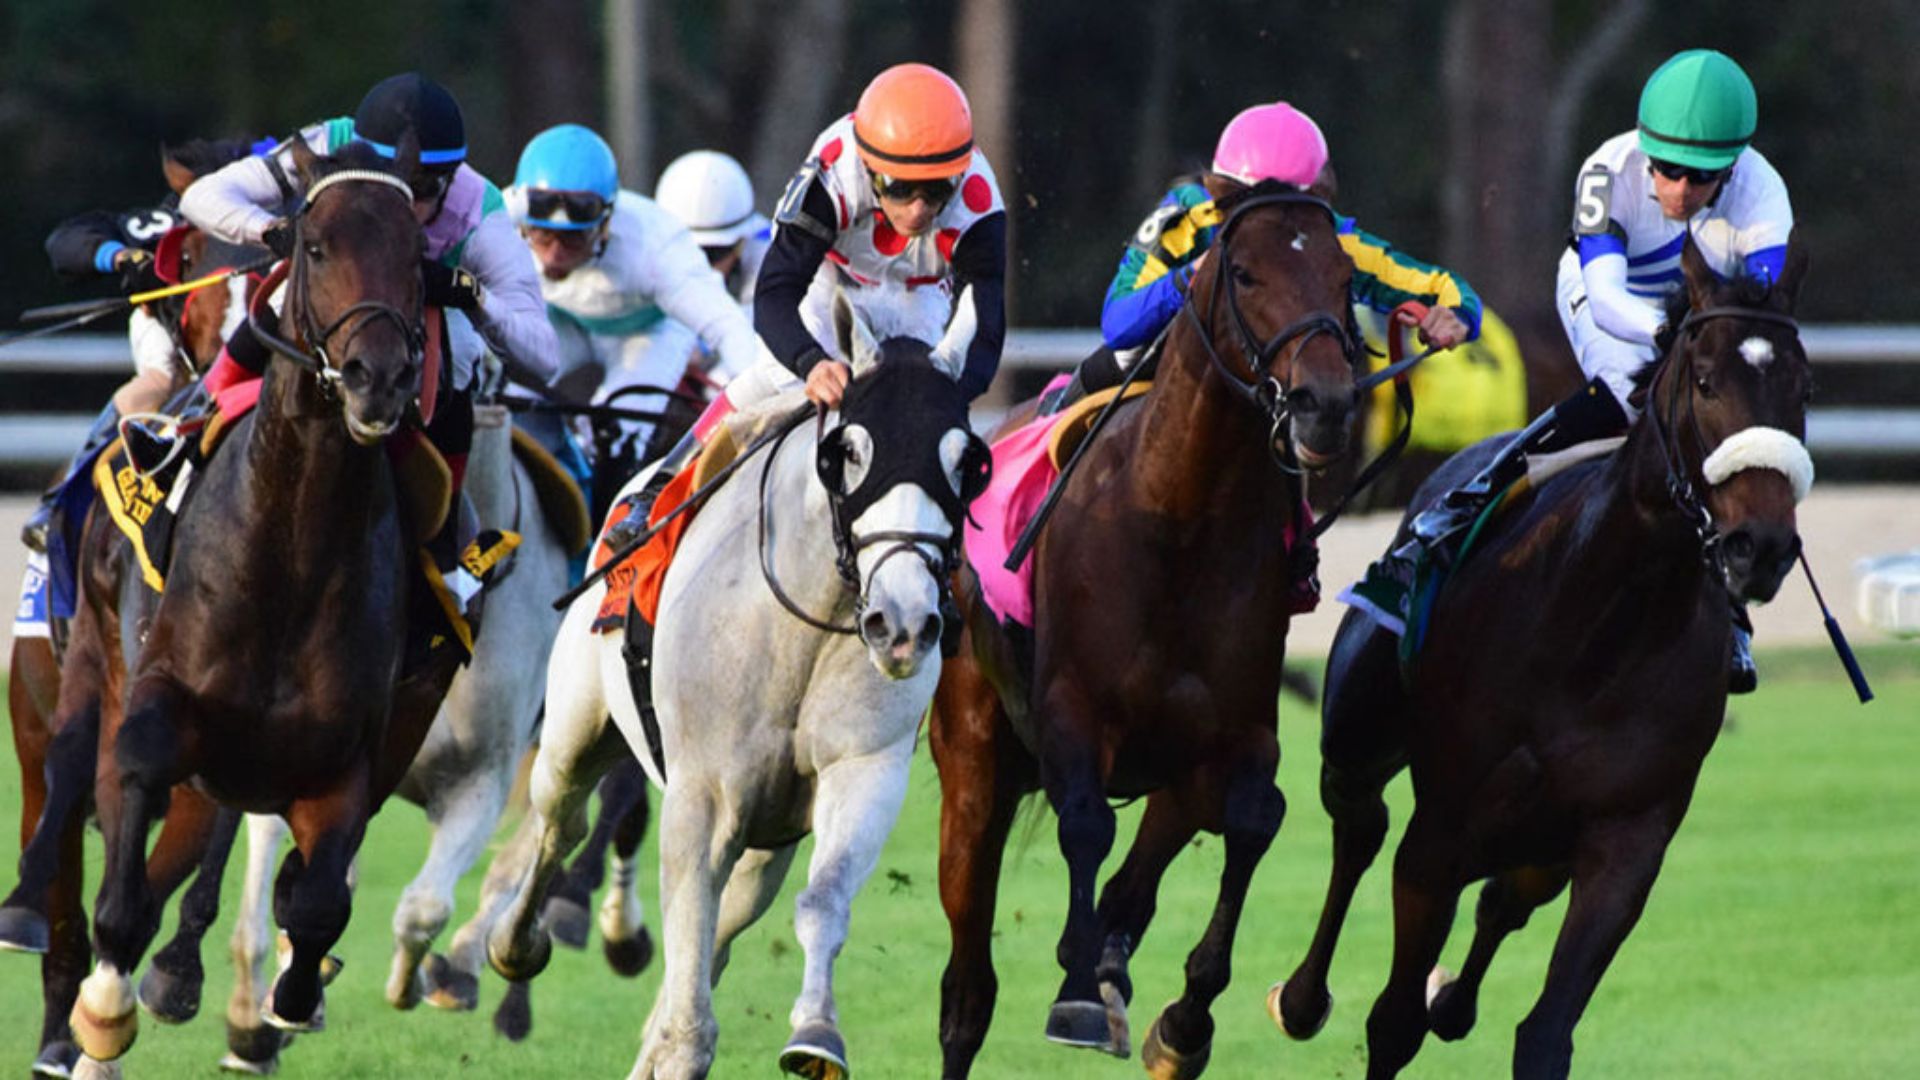 Carreras de caballos: tipos, eventos destacados y dónde verlas